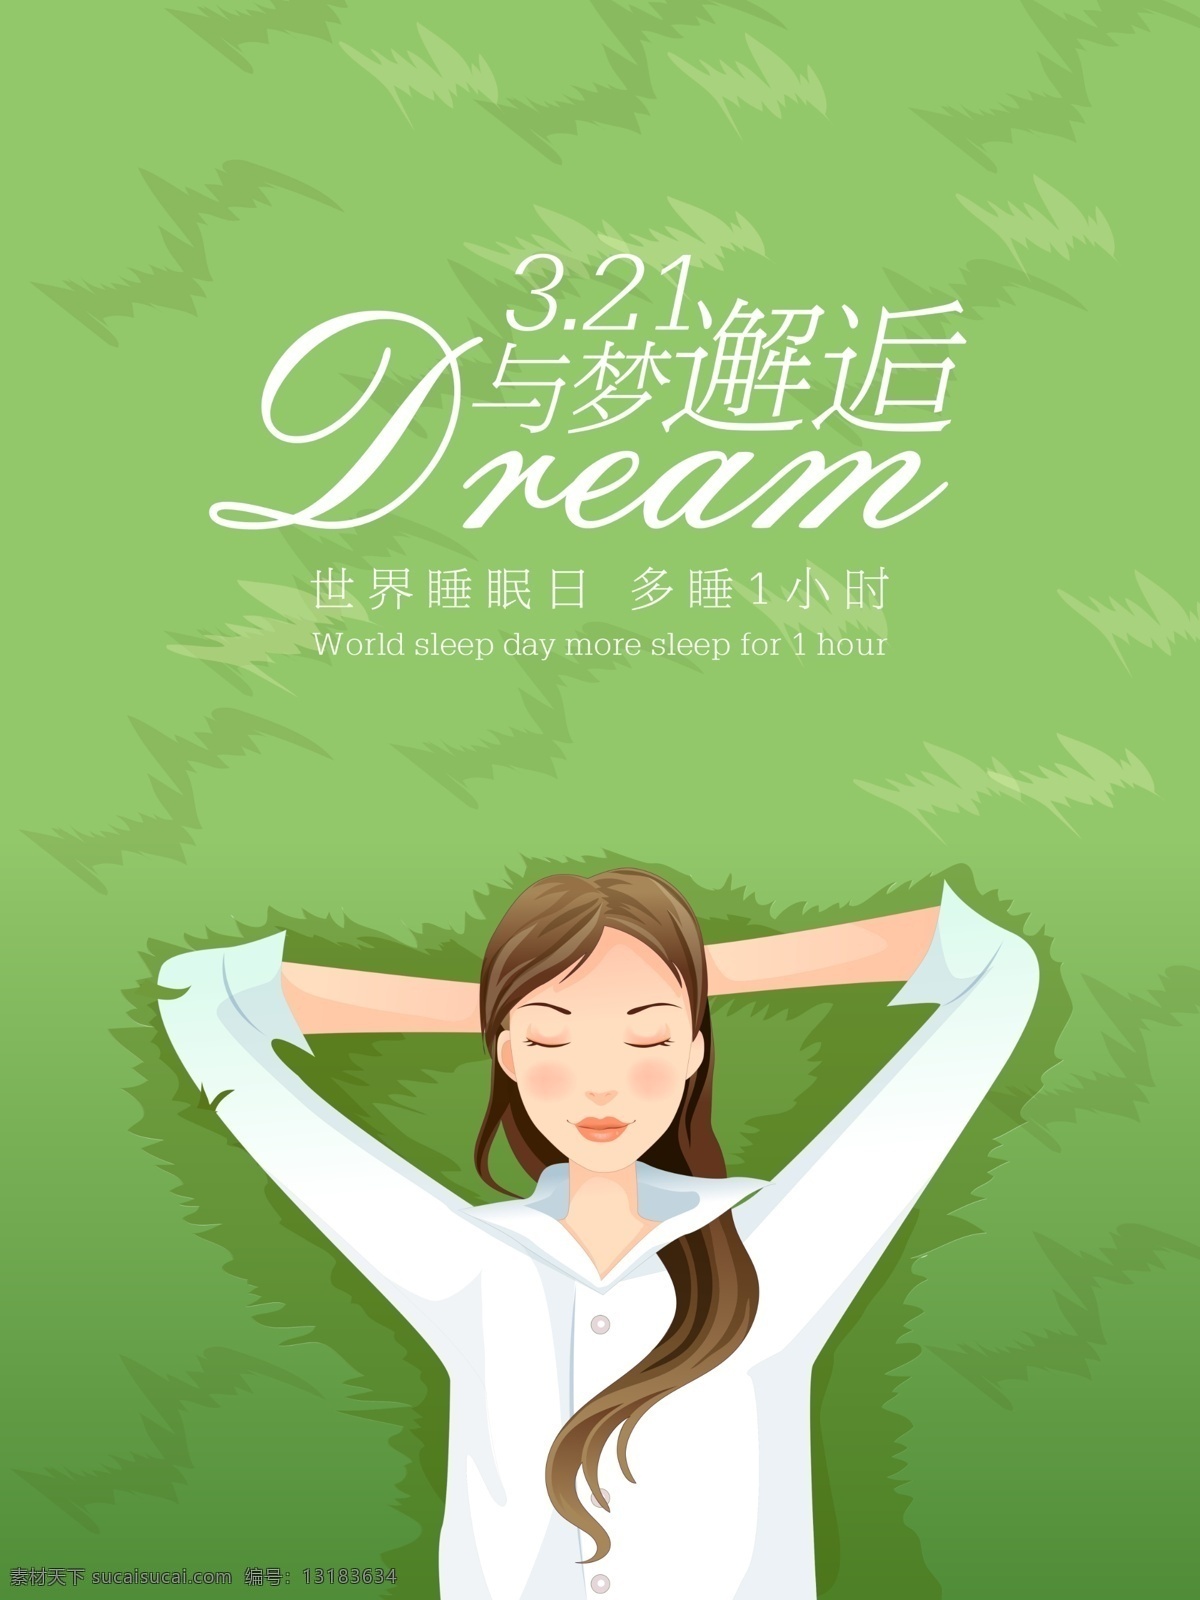 321 清新 绿色 世界 睡眠 日 唯美 躺在 草地 睡觉 睡着 少女 美女 3月21日 世界睡眠日 睡眠日 与梦邂逅